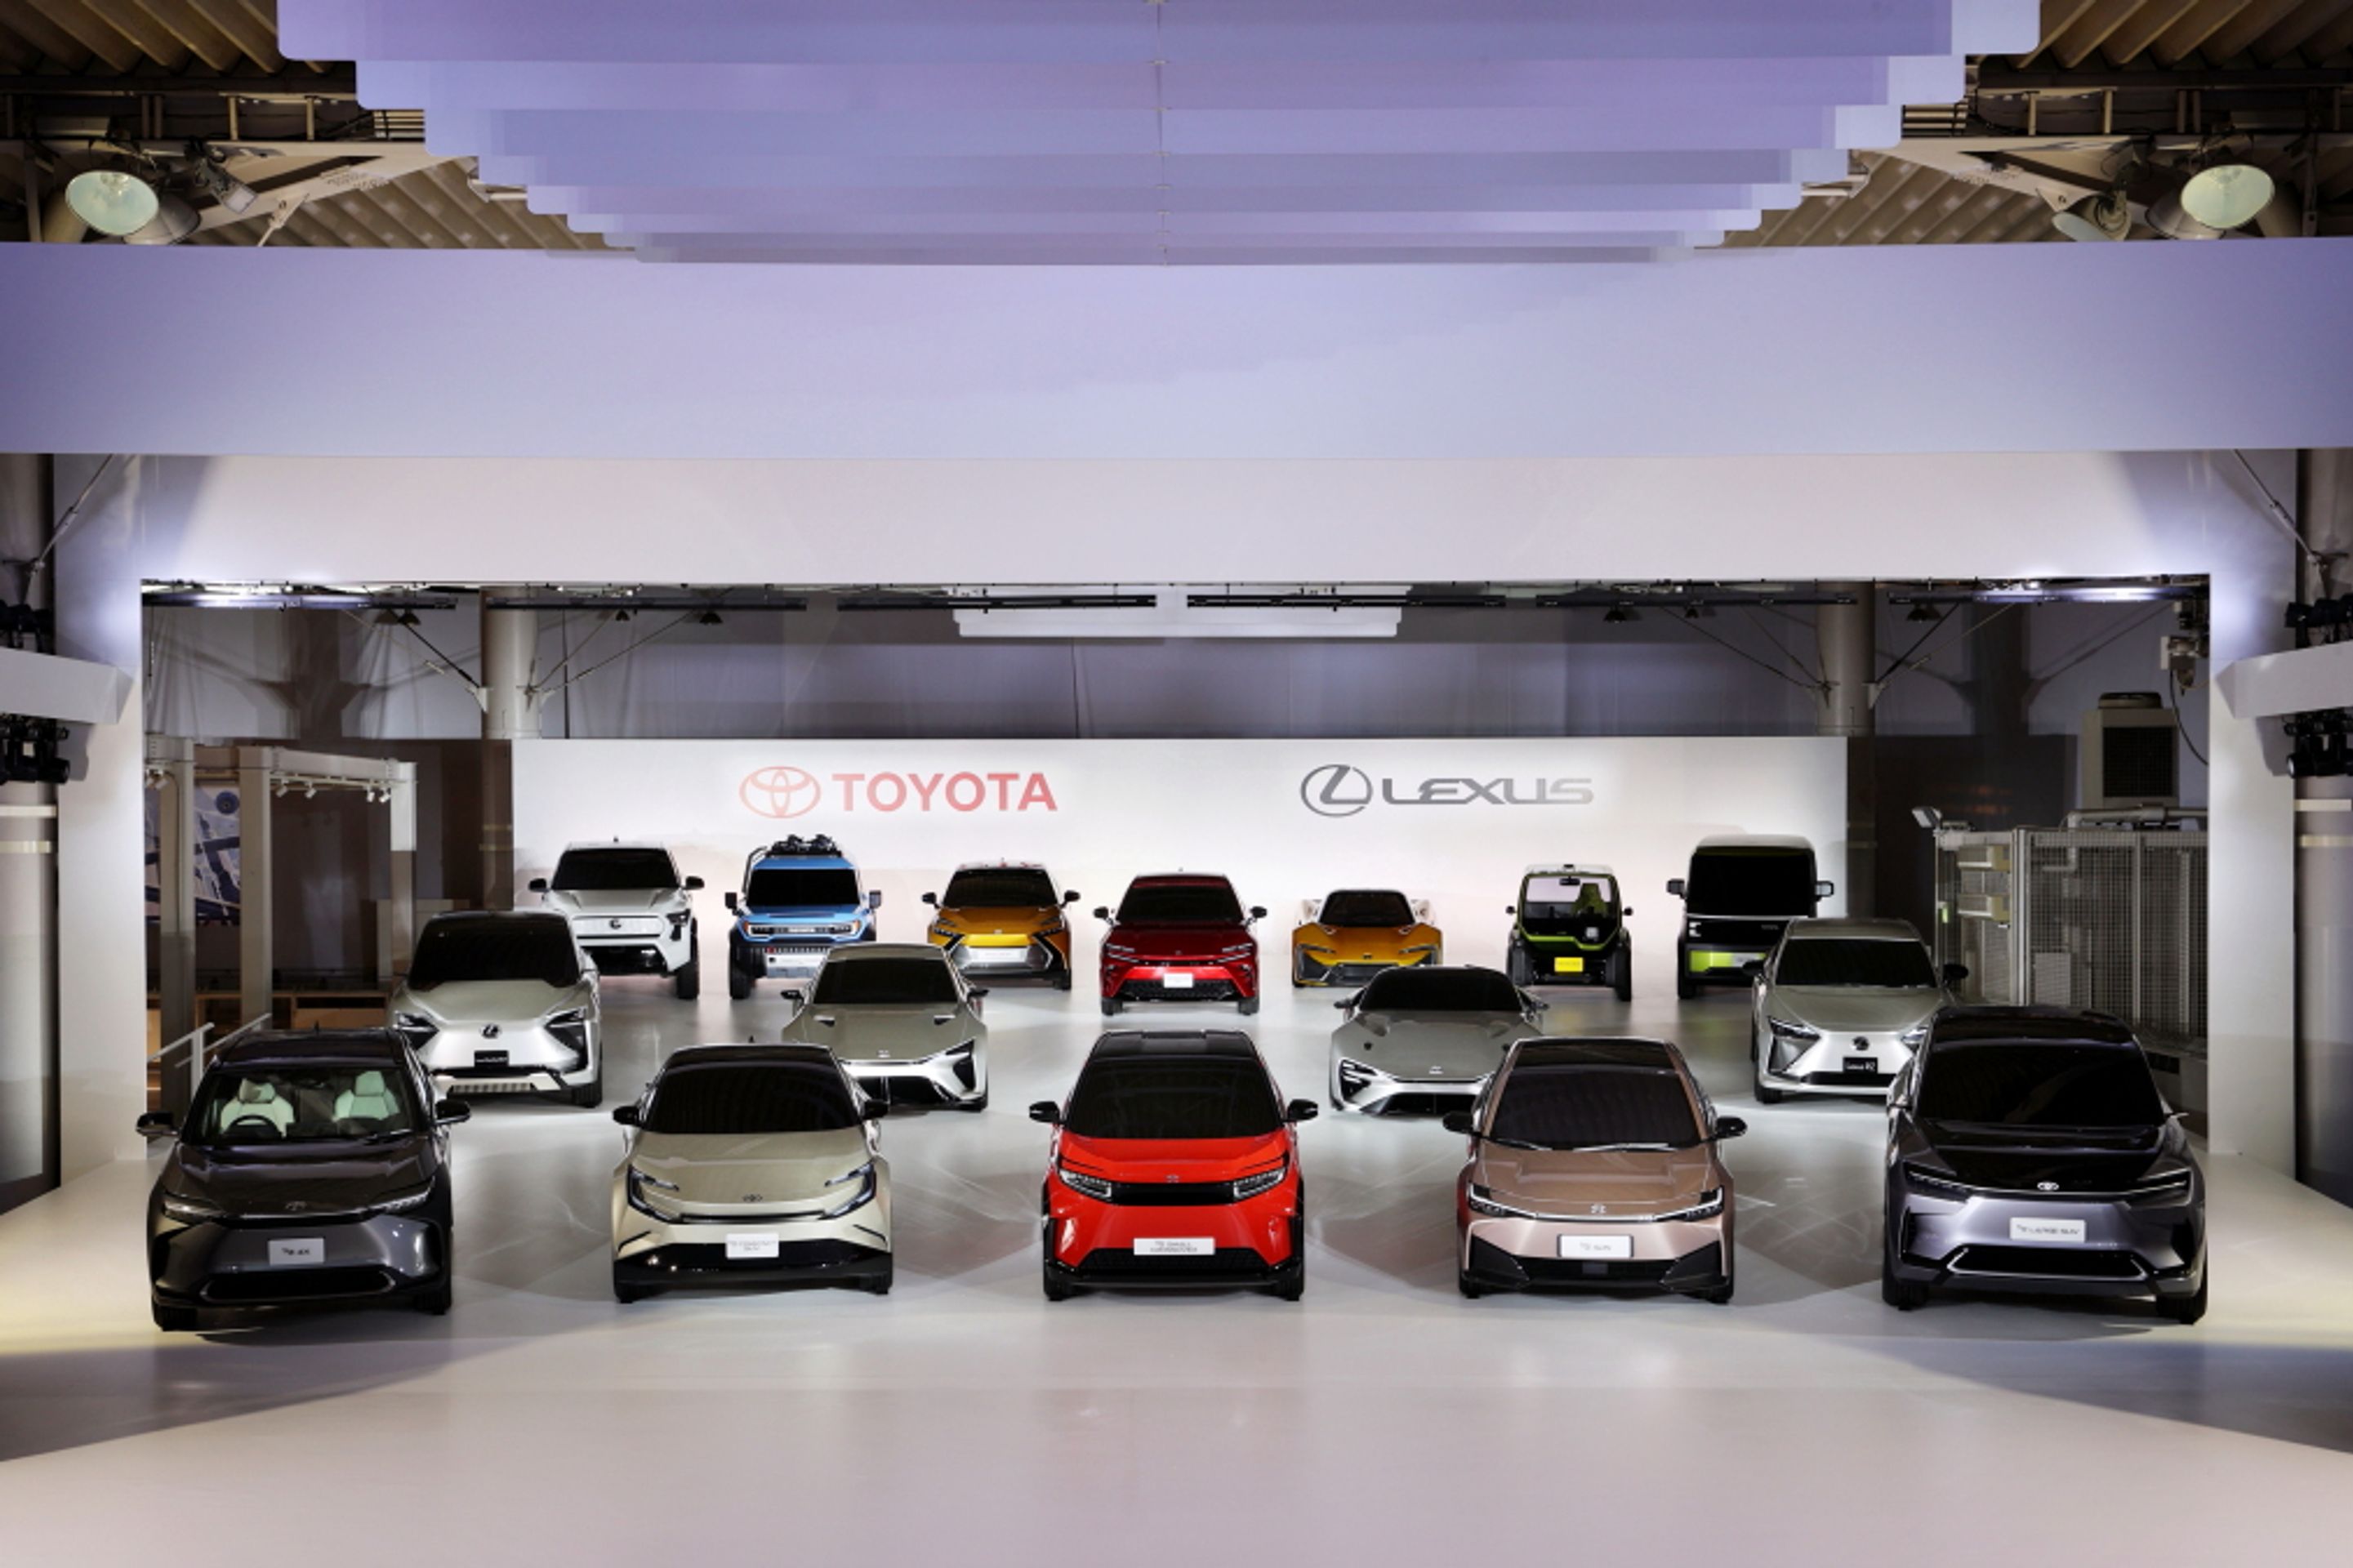 Budoucí bateriové vozy značek Toyota a Lexus - Takhle vypadá bateriová budoucnost podle značek Toyota a Lexus (3/23)